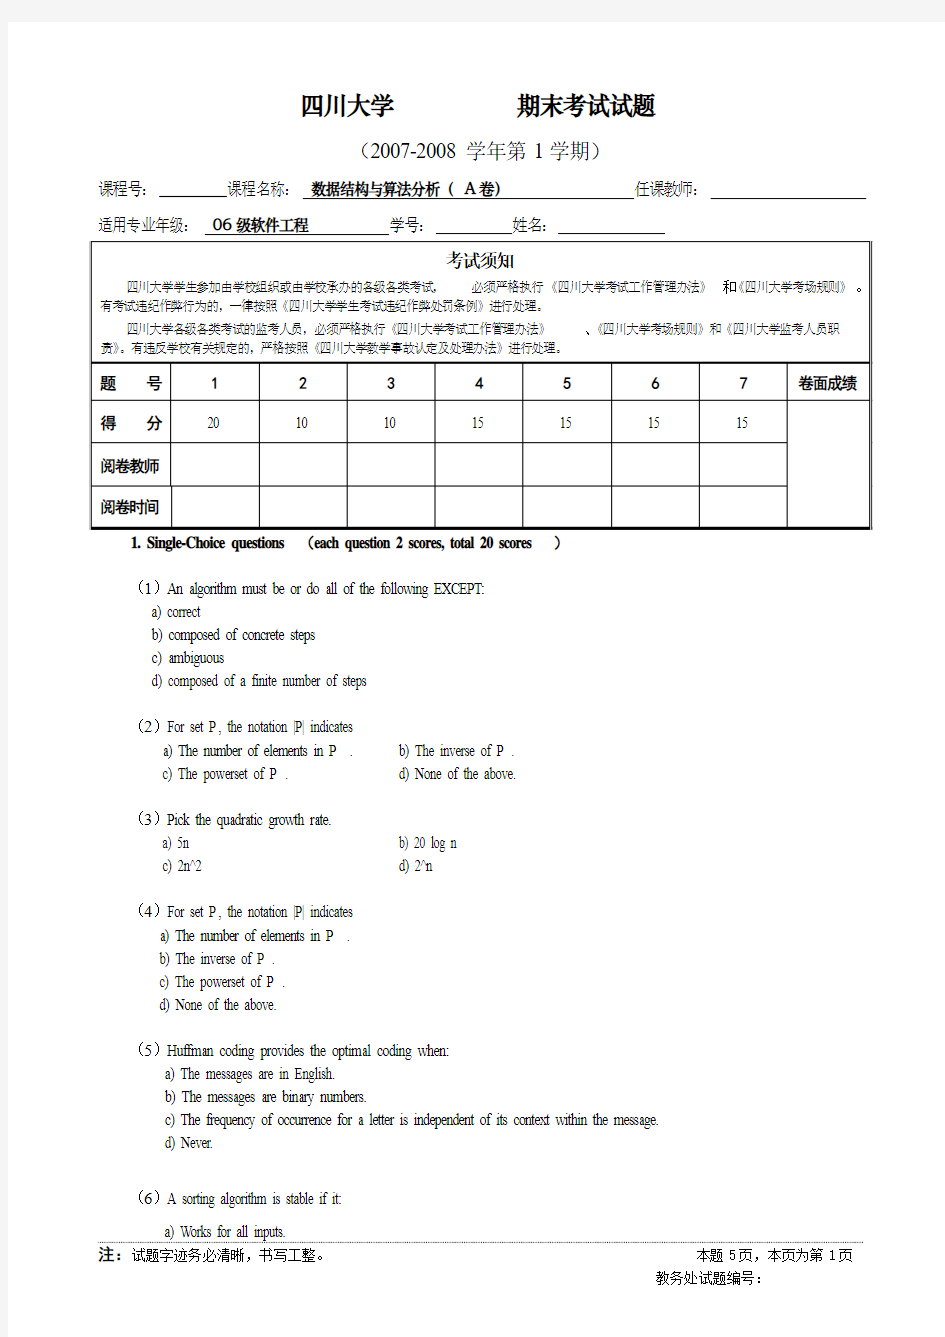 四川大学软件学院数据结构与算法分析期末试题(2006 级B)